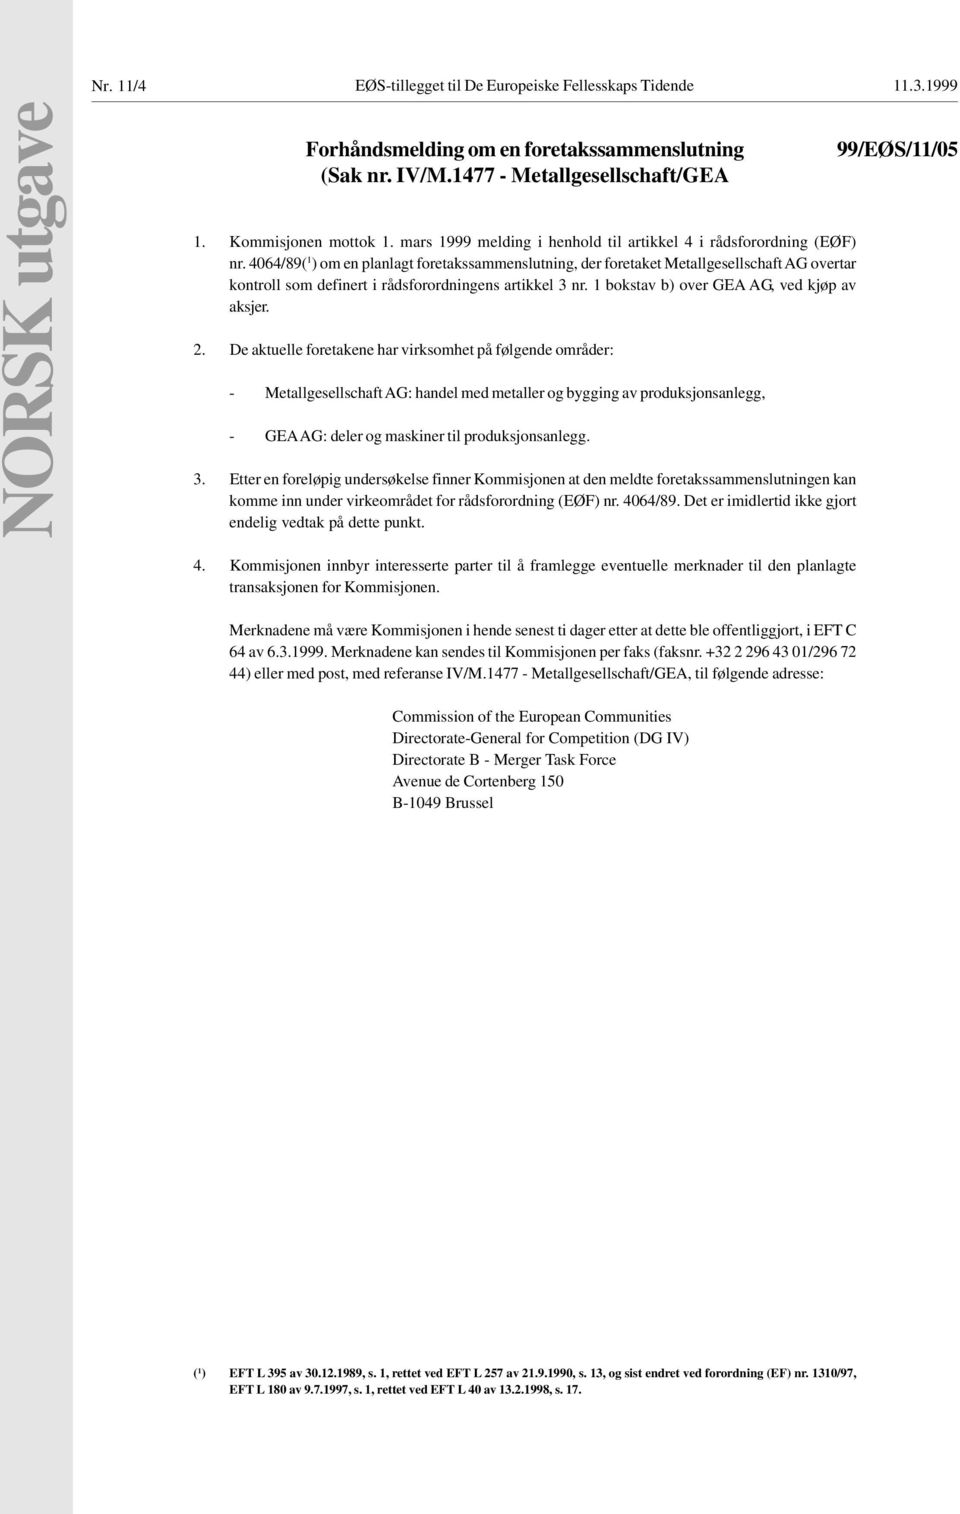 4064/89( 1 ) om en planlagt foretakssammenslutning, der foretaket Metallgesellschaft AG overtar kontroll som definert i rådsforordningens artikkel 3 nr. 1 bokstav b) over GEA AG, ved kjøp av aksjer.